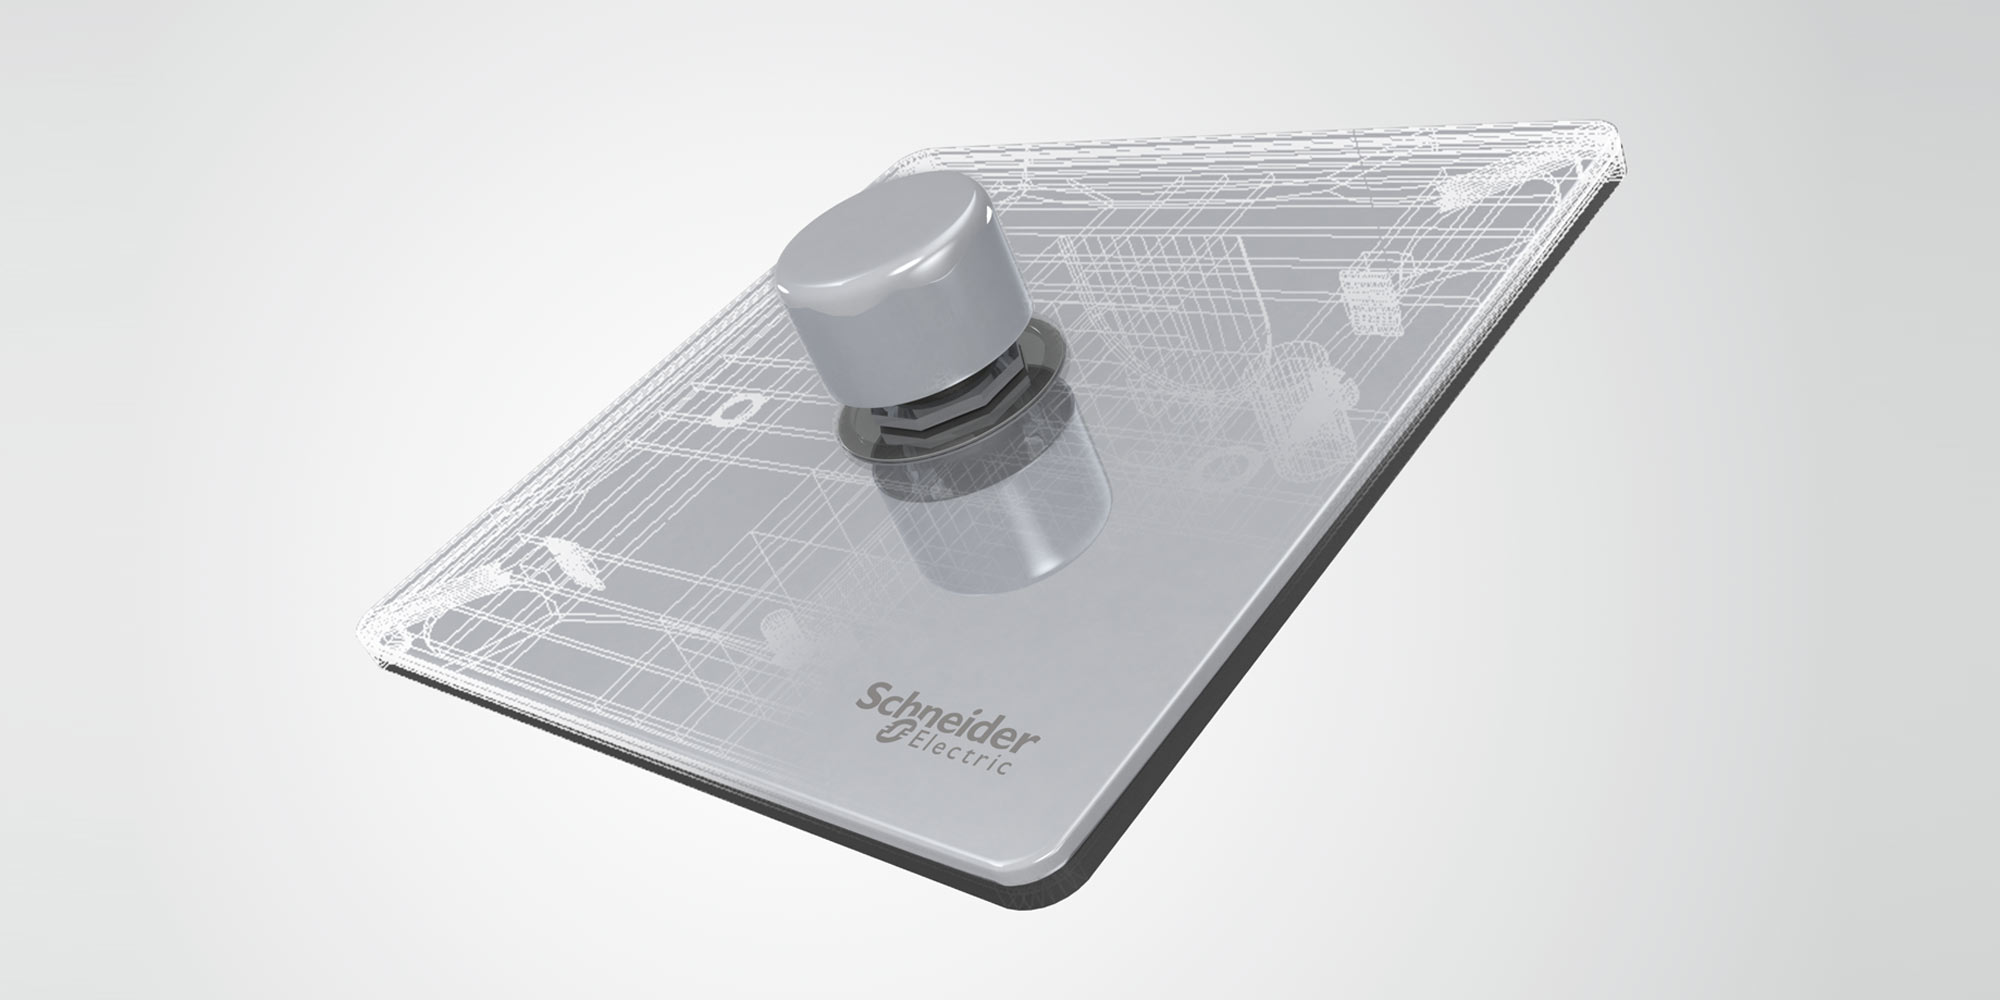 Schneider Electric dimmer switch concept design